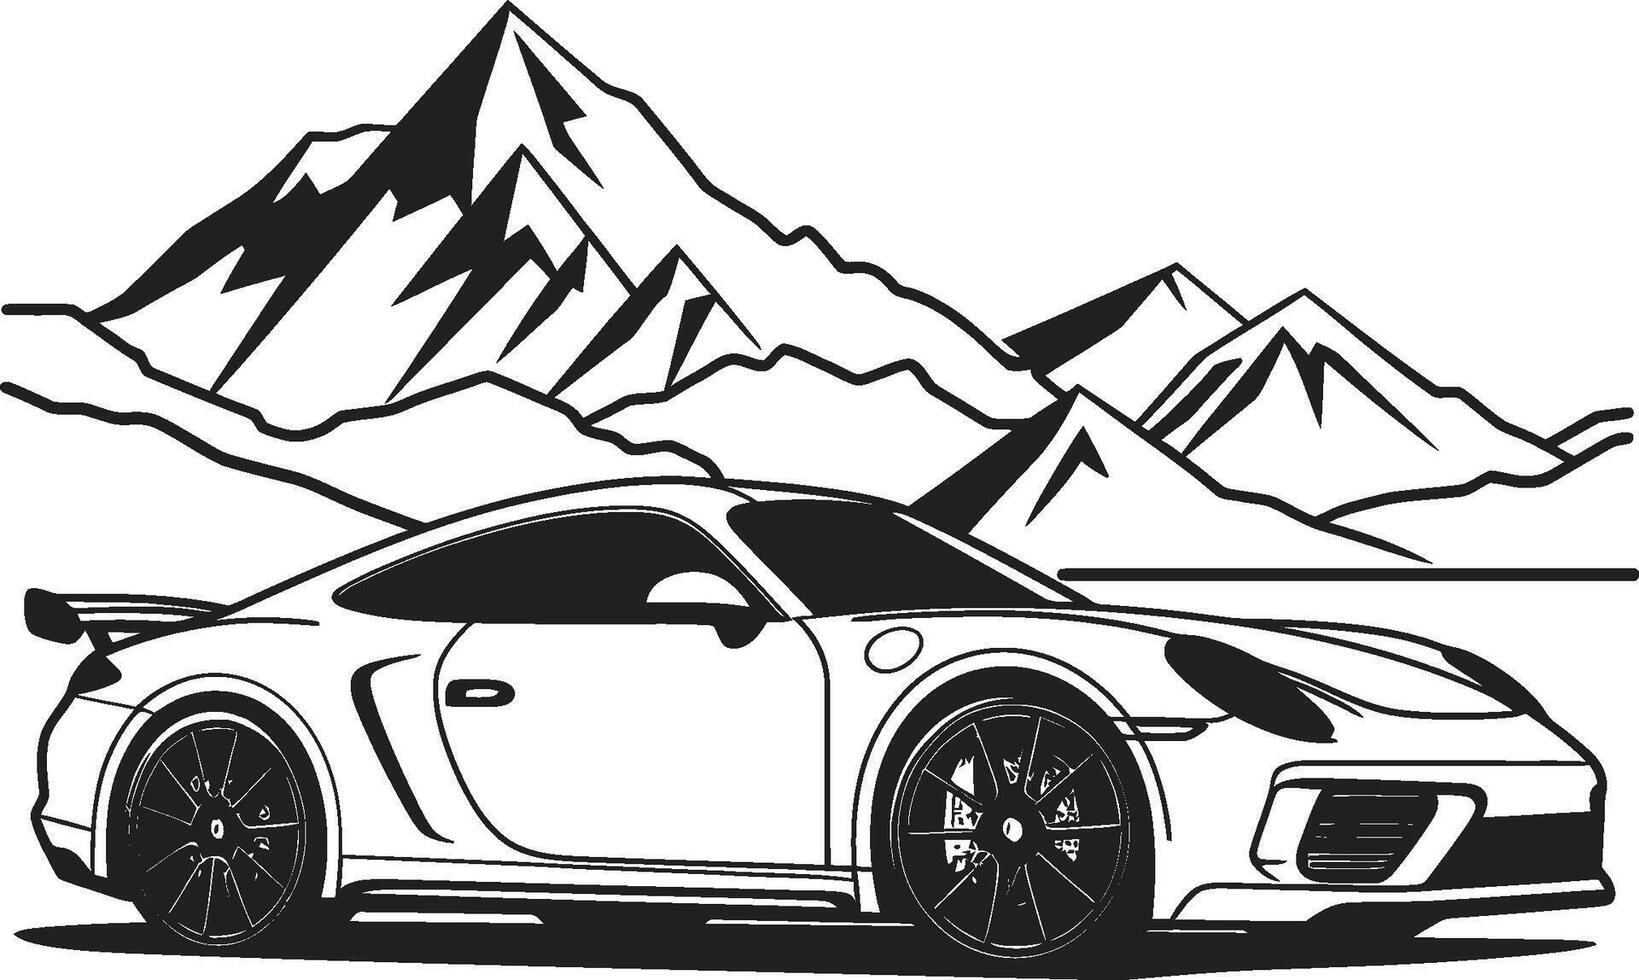 apex strävan svart logotyp design terar en sporter bil på slående bergig spår i vektor höjdpunkt topp ikoniska symbol av en sporter bil skalning svart berg vägar i vektor